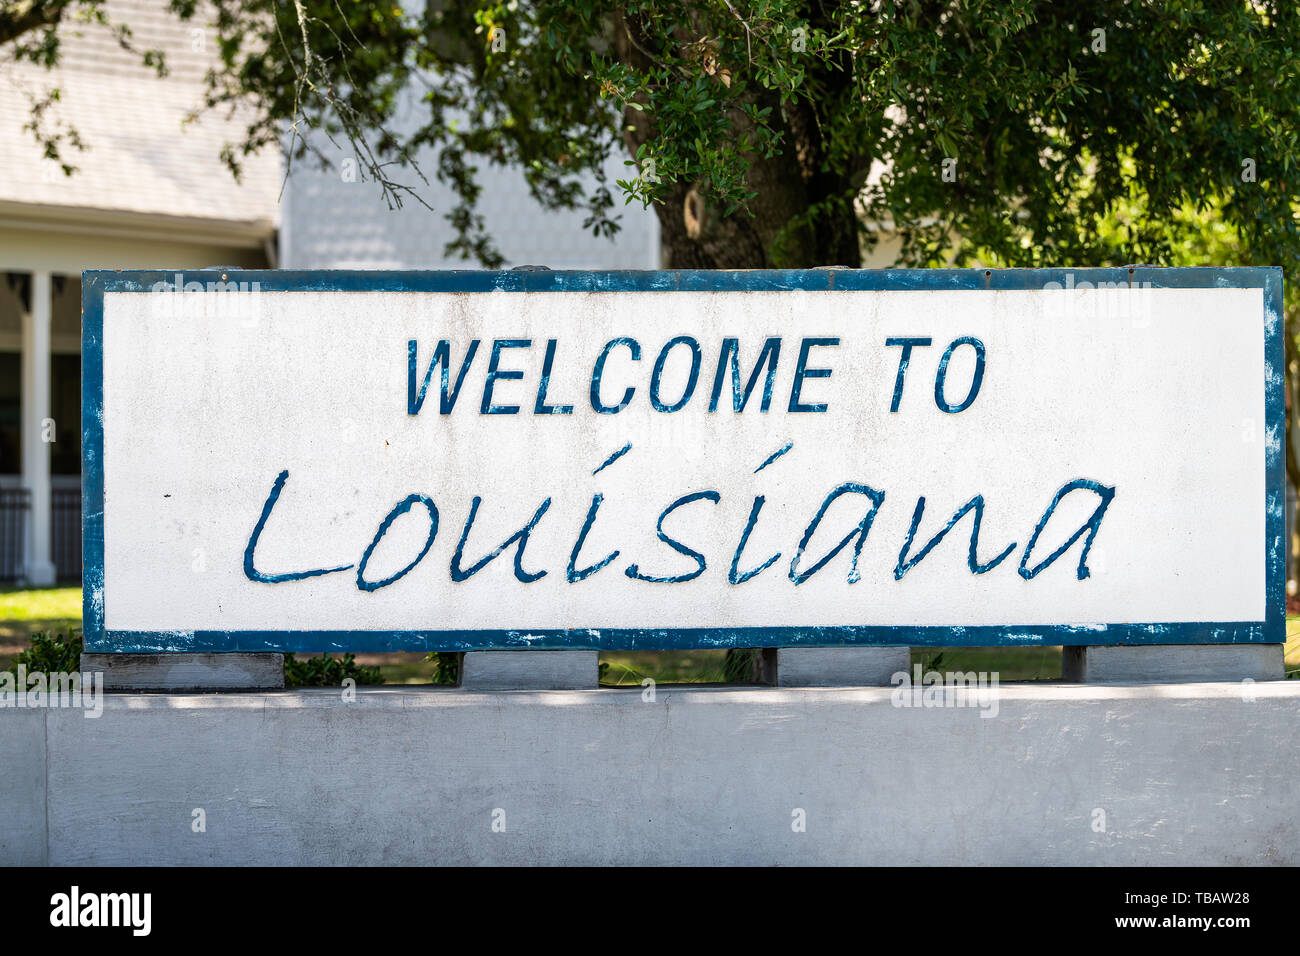 Slidell, États-Unis - 22 Avril 2018 : Route Autoroute avec Bienvenue en Louisiane et signe un texte sur rue avec personne libre au centre du visiteur Banque D'Images